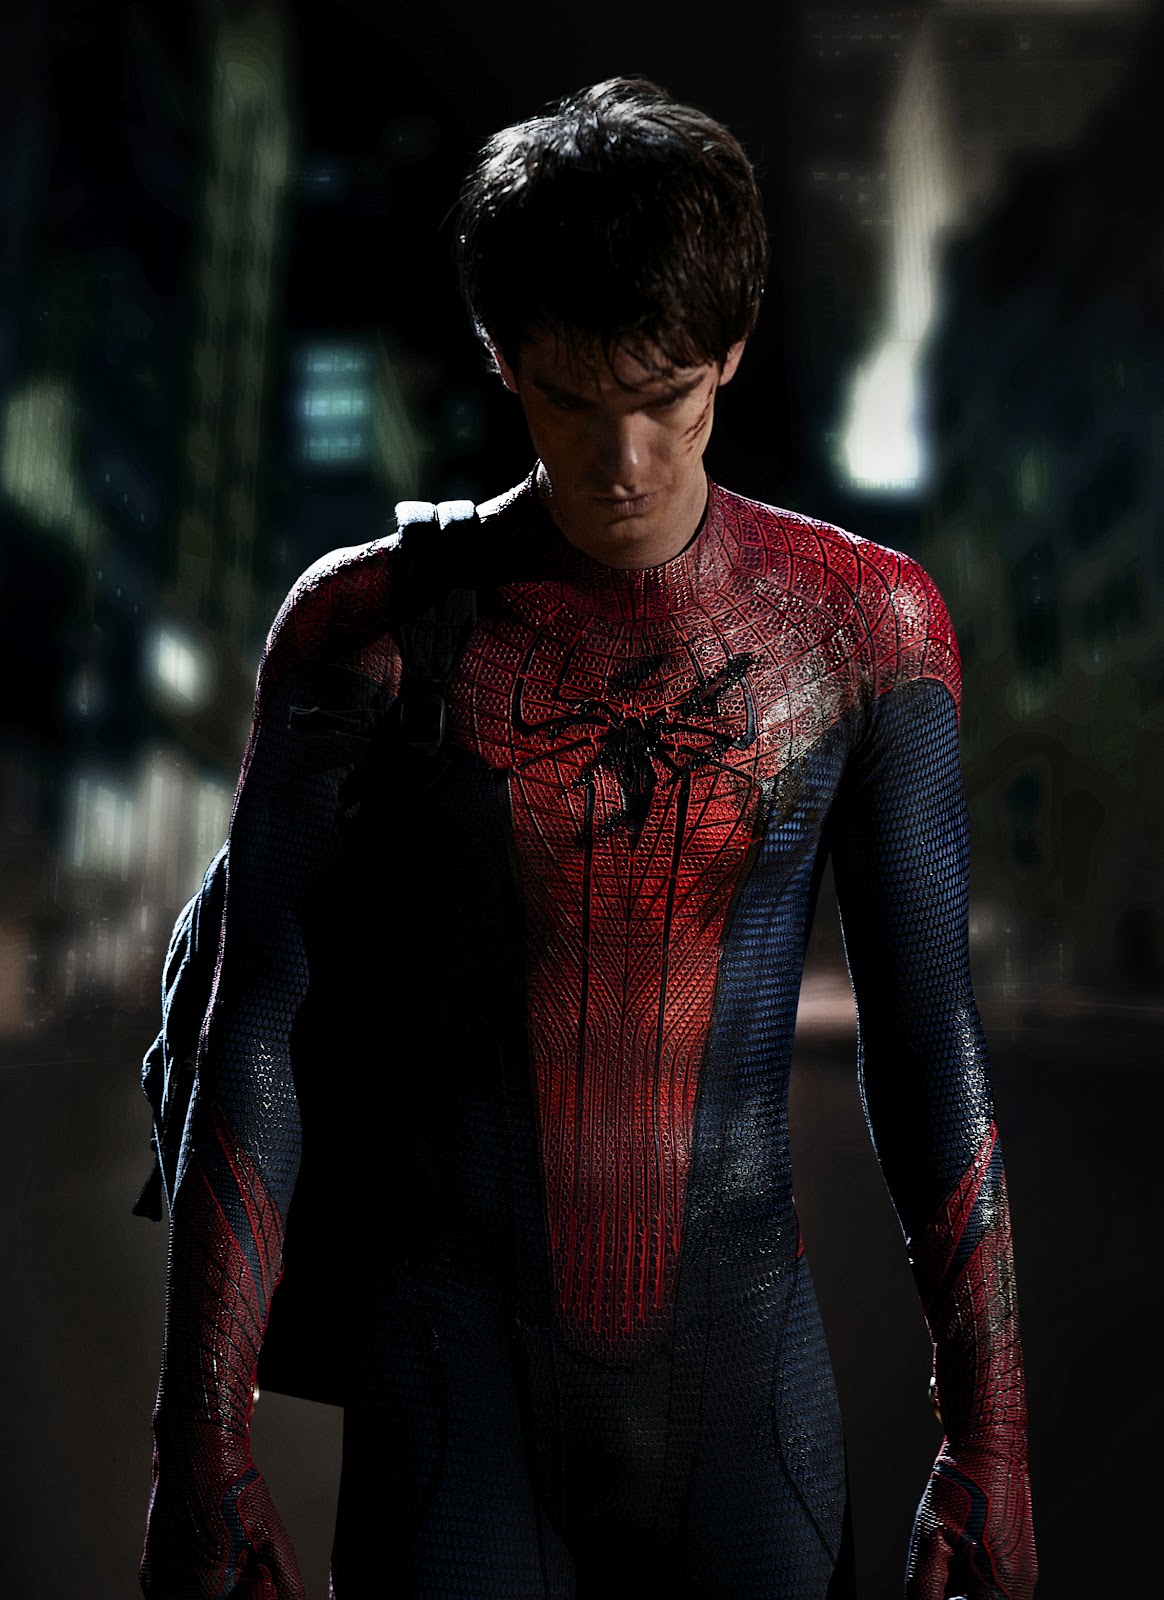 http://4.bp.blogspot.com/-OvhiHpVfN9E/T_q4kvDJDsI/AAAAAAAABK0/E7kJKFfb2E4/s1600/the+Spider-Man-costume.jpg